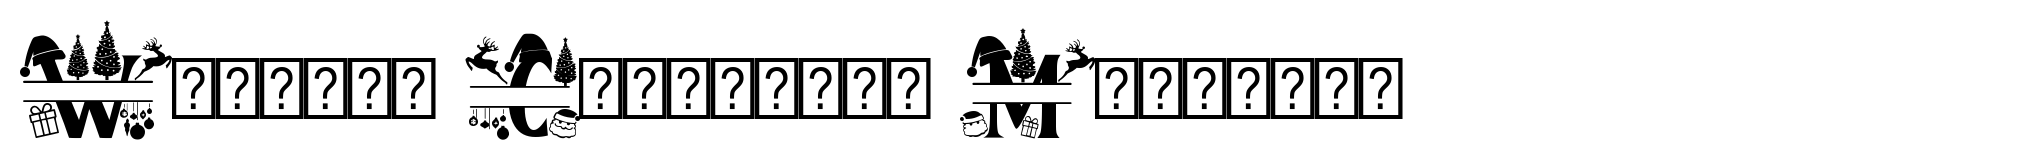 Welcome Christmas Monogram image